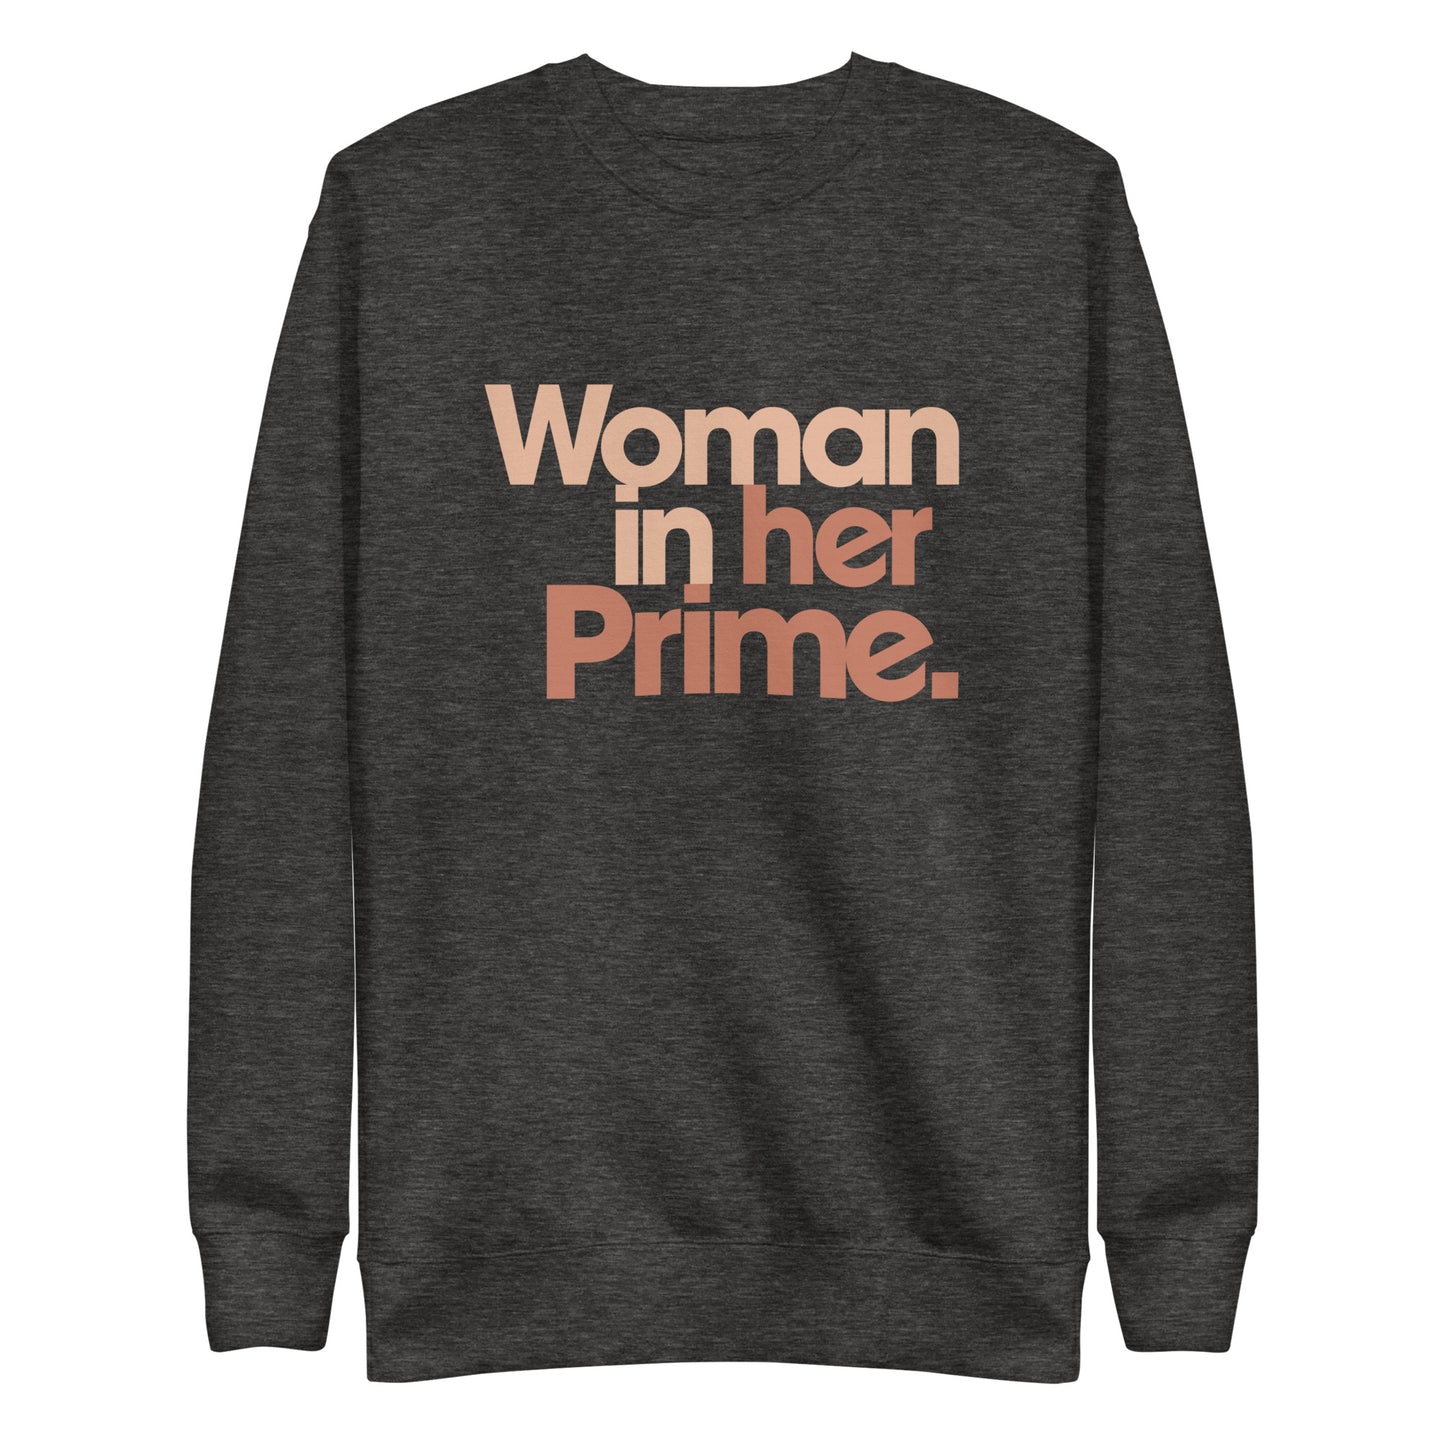 Woman in her Prime - Sweatshirt